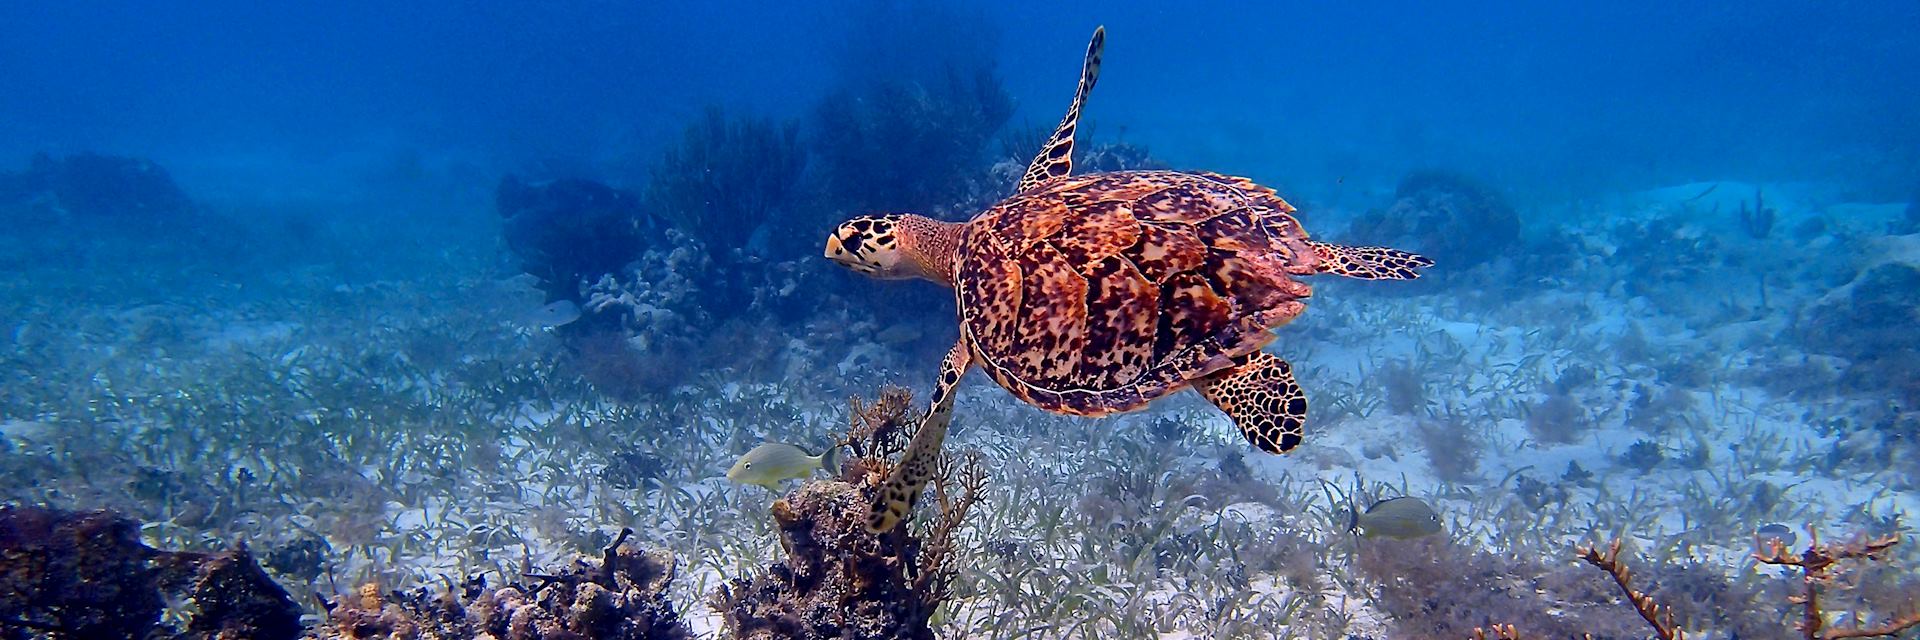 Sea turtle, Belize